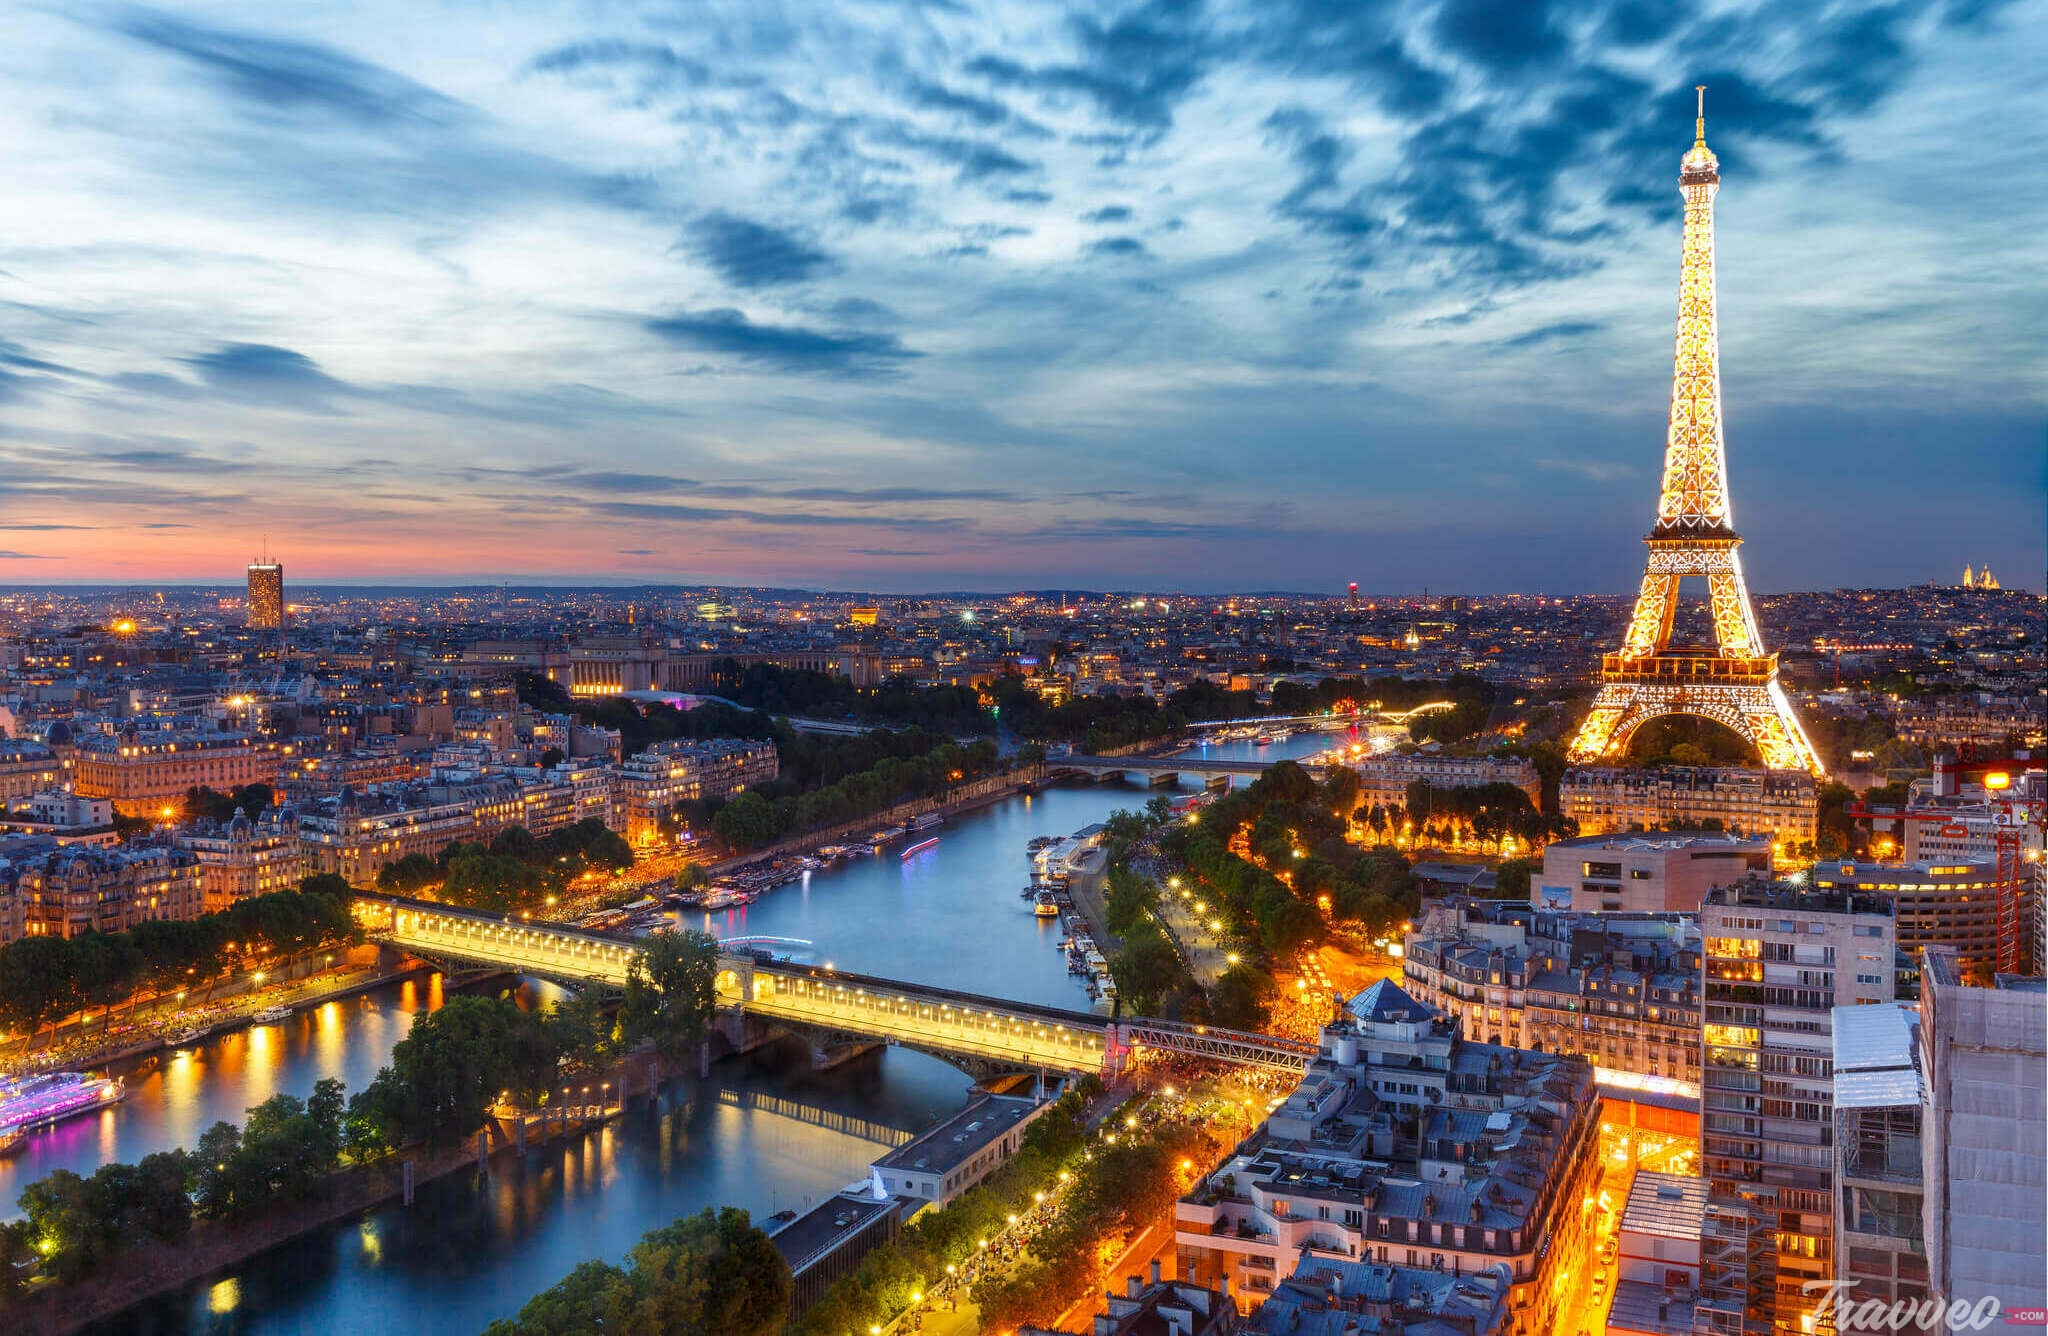 افضل فنادق باريس لشهر العسل - ترافيو كوم للرحلات السياحية وحجز الفنادق